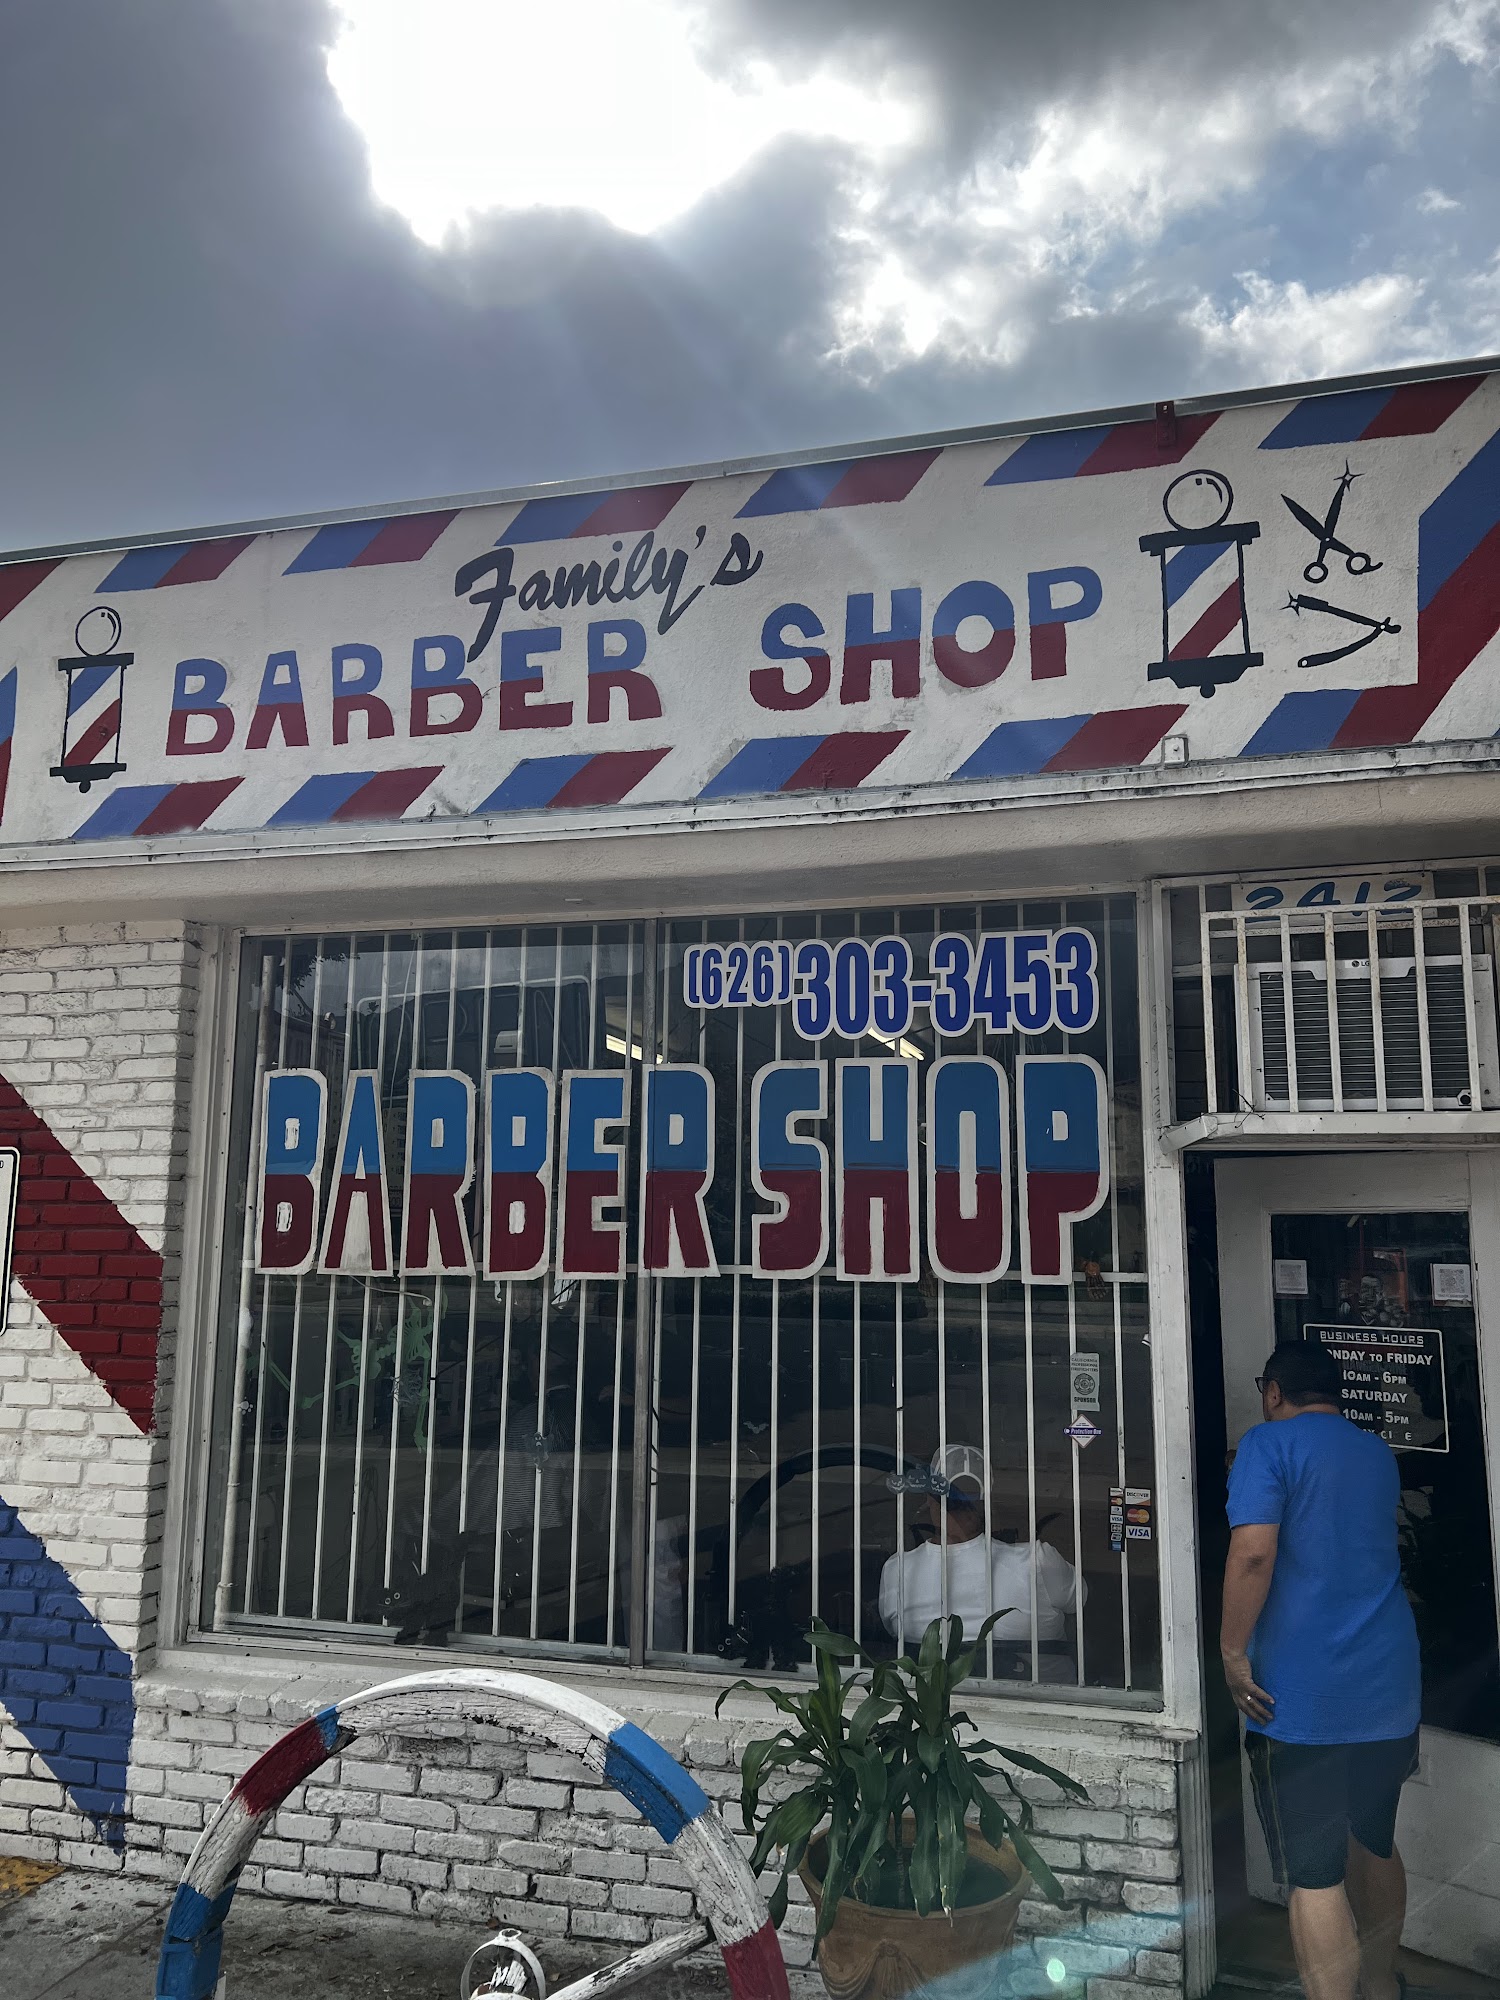 Family's Barber Shop 2412 E Huntington Dr, Duarte California 91010